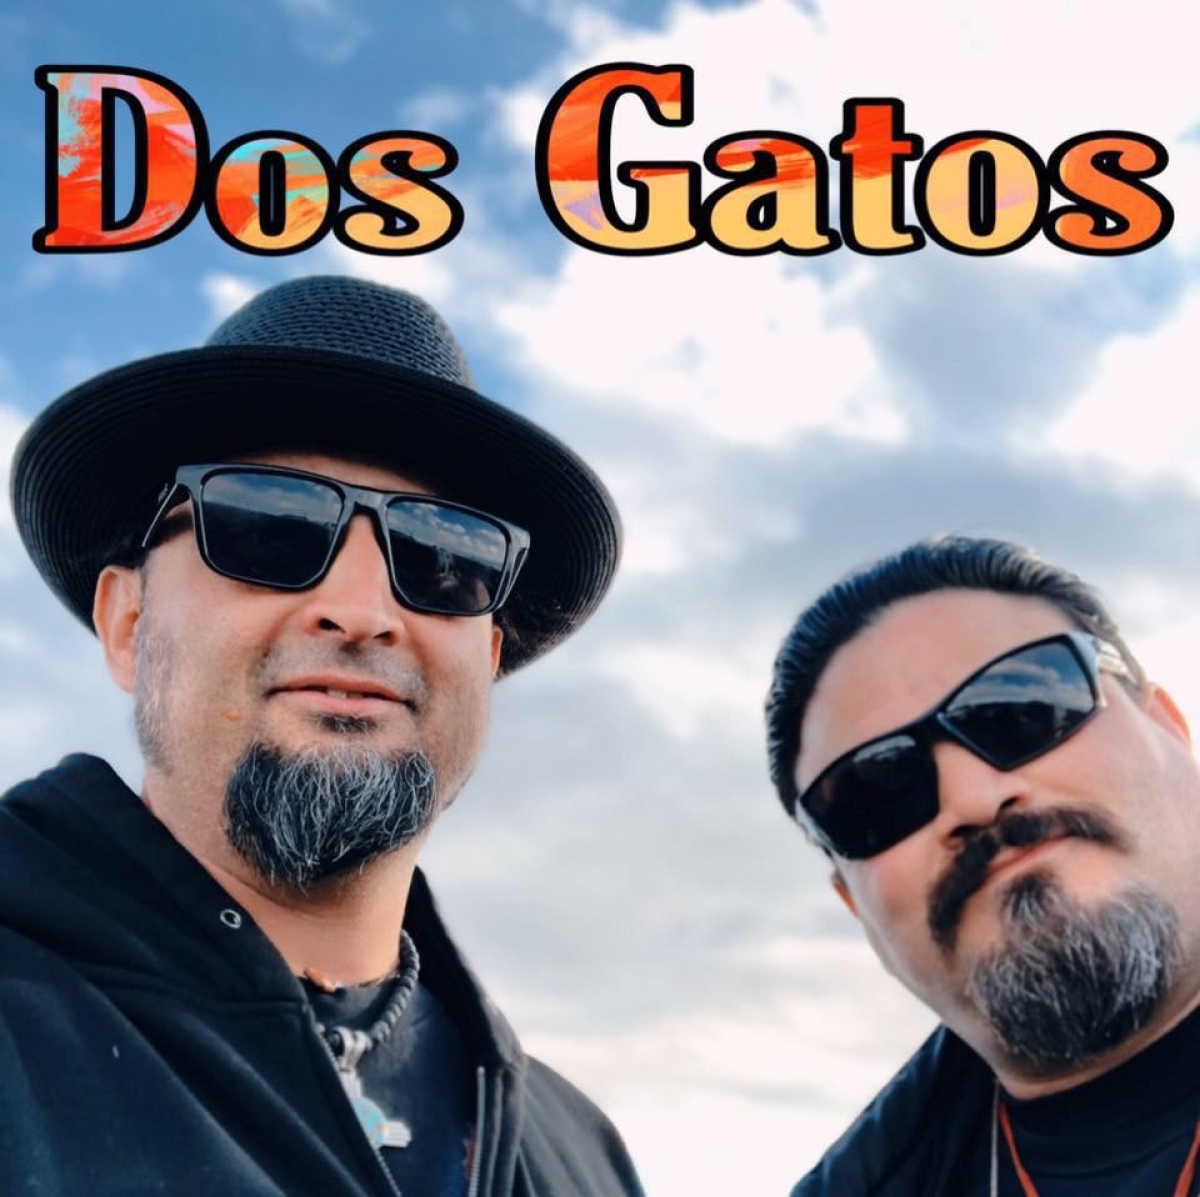 Our Fair New Mexico: A VIRTUAL Concert Series Featuring Dos Gatos 